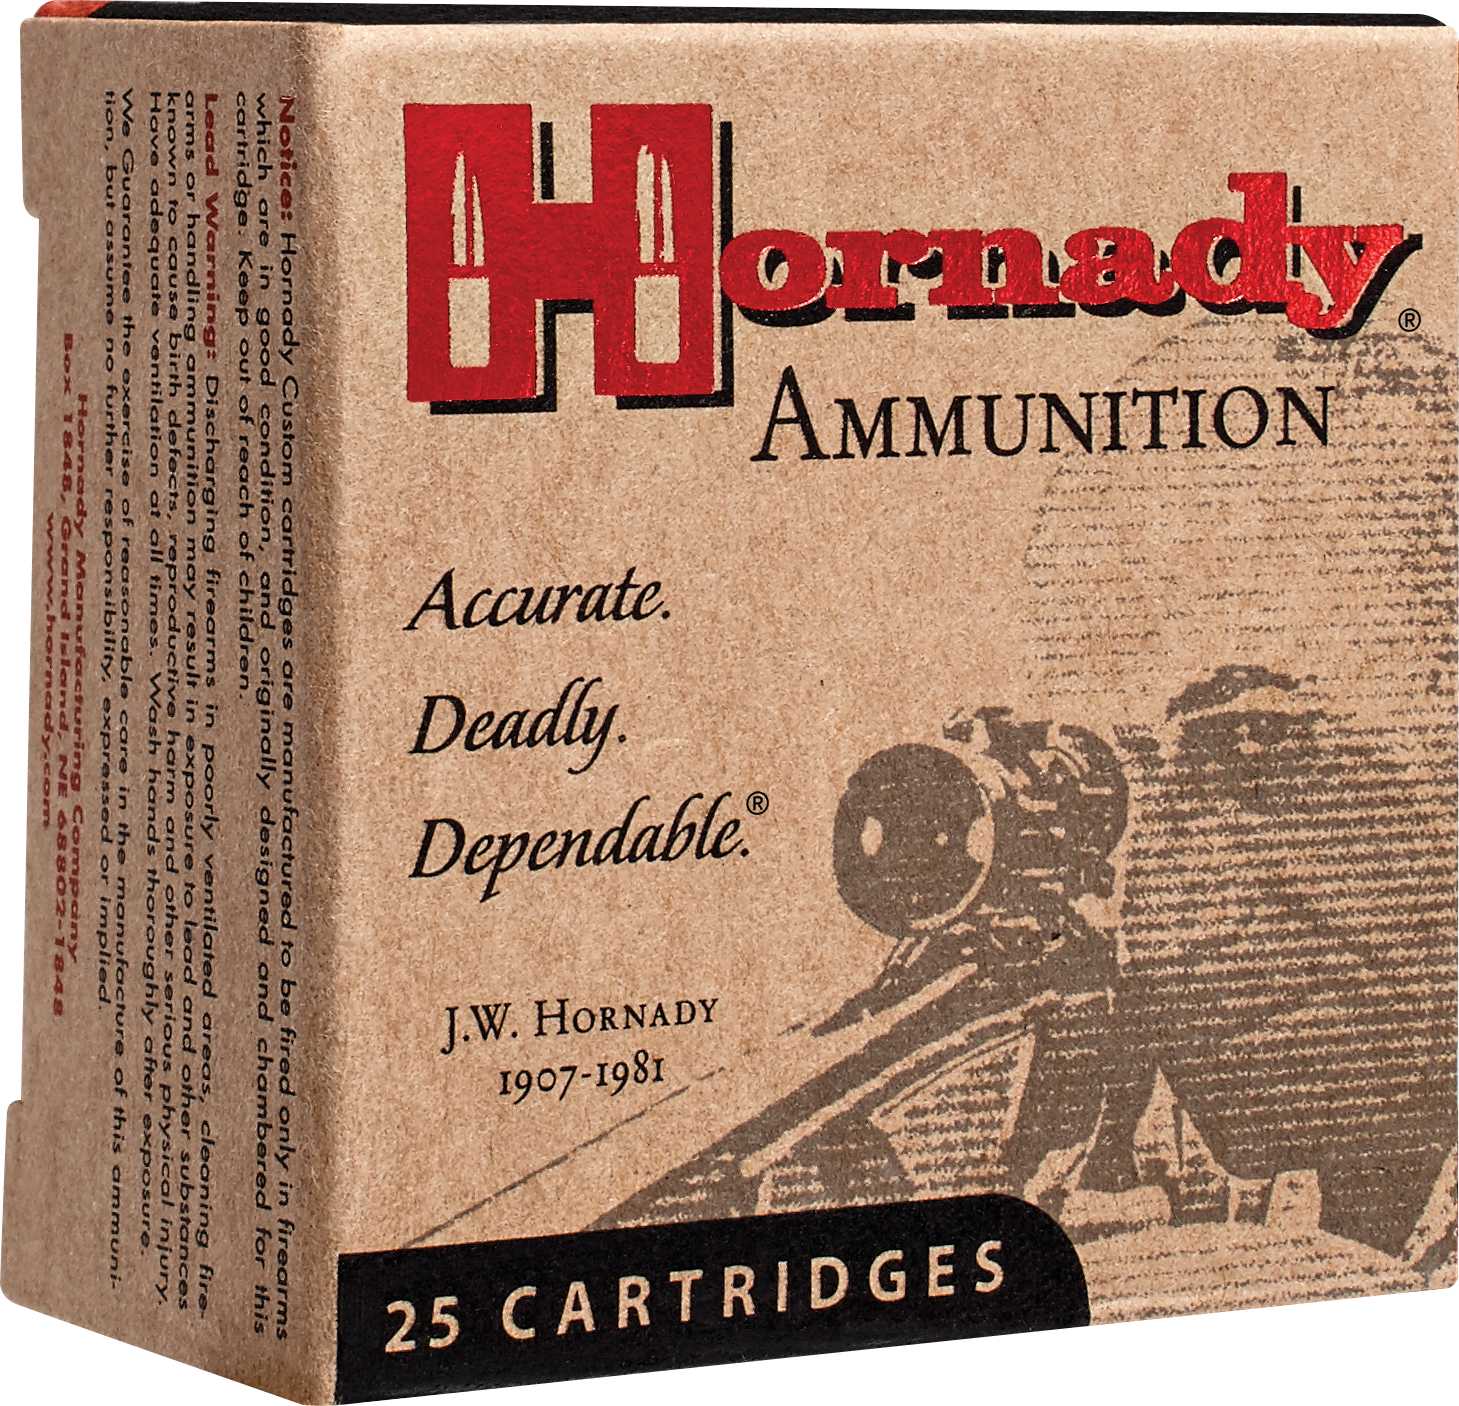 10mm 20 Rounds Ammunition Hornady 155 Grain Hollow Point